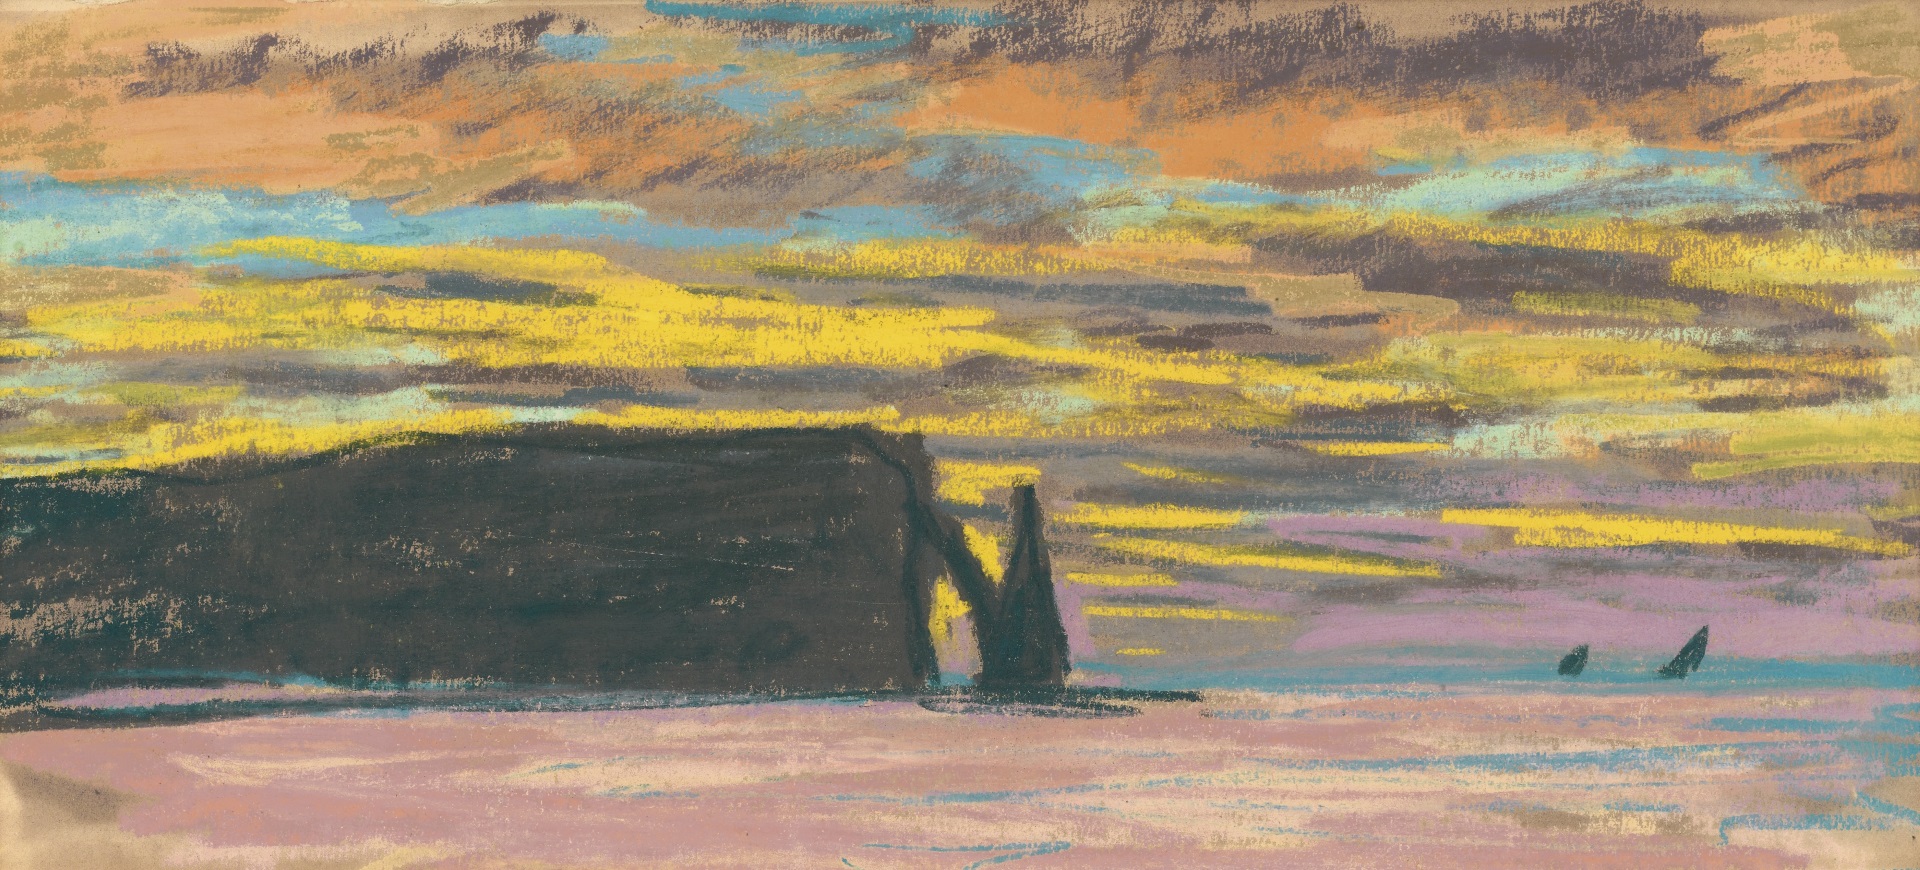 Claude Monet - Étretat, aiguille et porte d'aval, soleil couchant 1883-1885